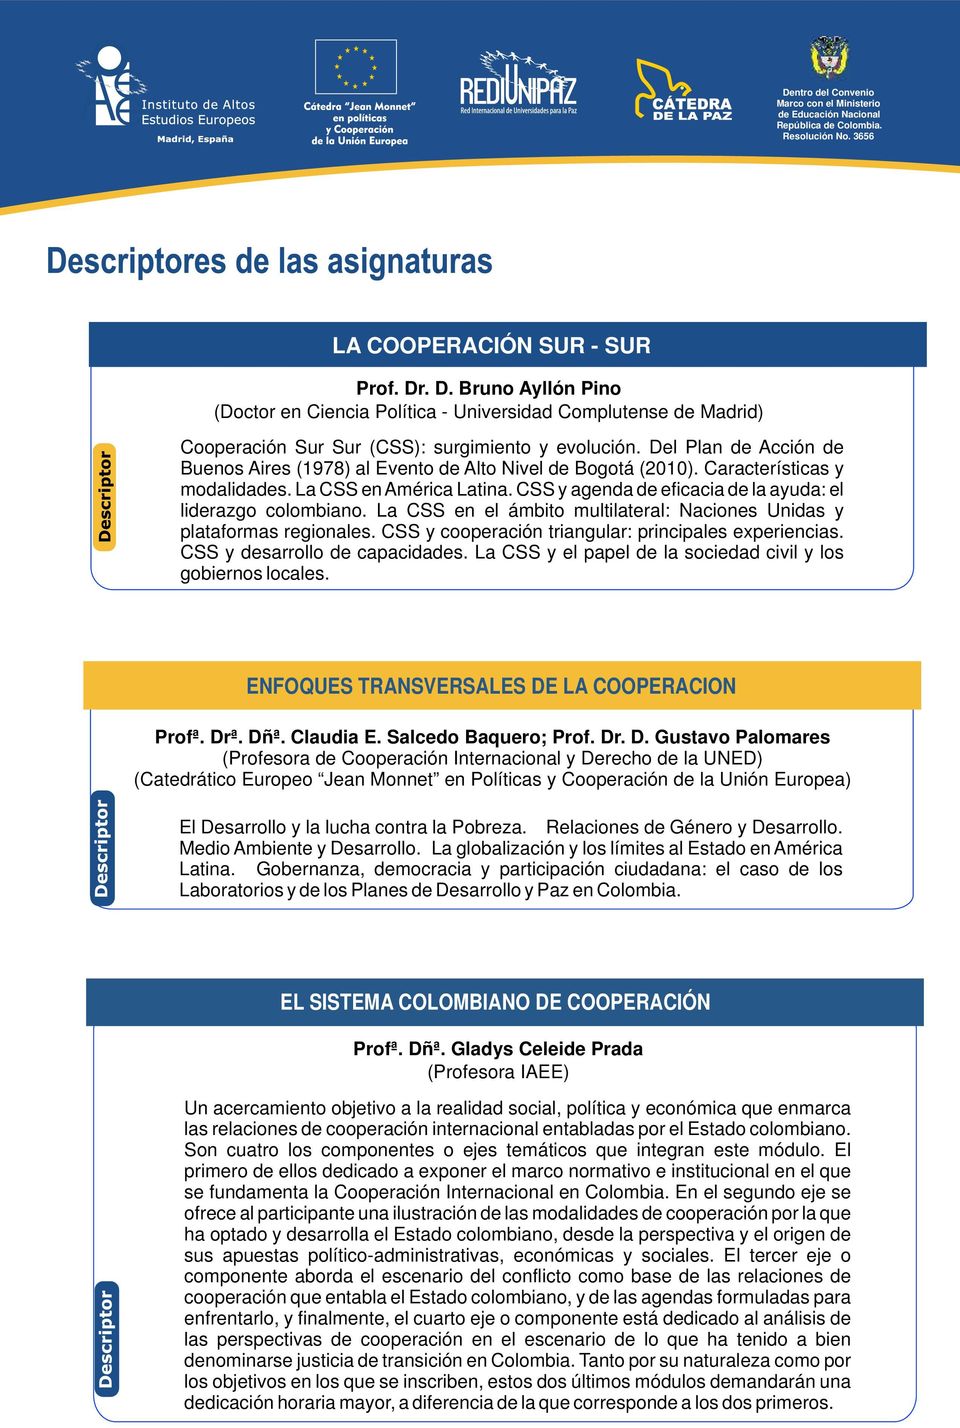 CSS y agenda de eficacia de la ayuda: el liderazgo colombiano. La CSS en el ámbito multilateral: Naciones Unidas y plataformas regionales. CSS y cooperación triangular: principales experiencias.